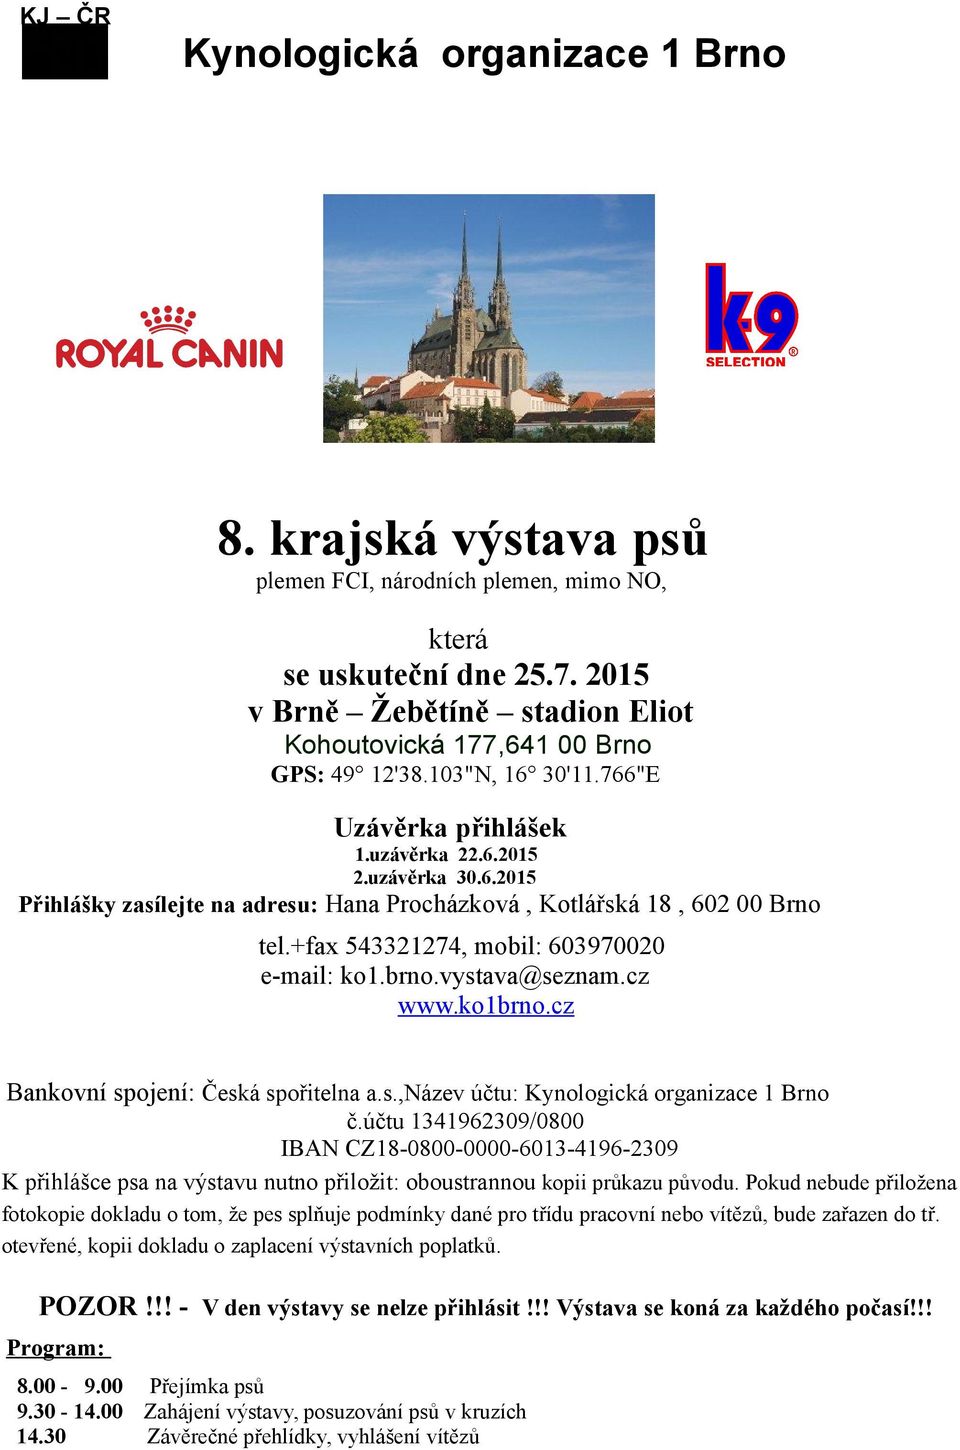 +fax 543321274, mobil: 603970020 e-mail: ko1.brno.vystava@seznam.cz www.ko1brno.cz Bankovní spojení: Česká spořitelna a.s.,název účtu: Kynologická organizace 1 Brno č.